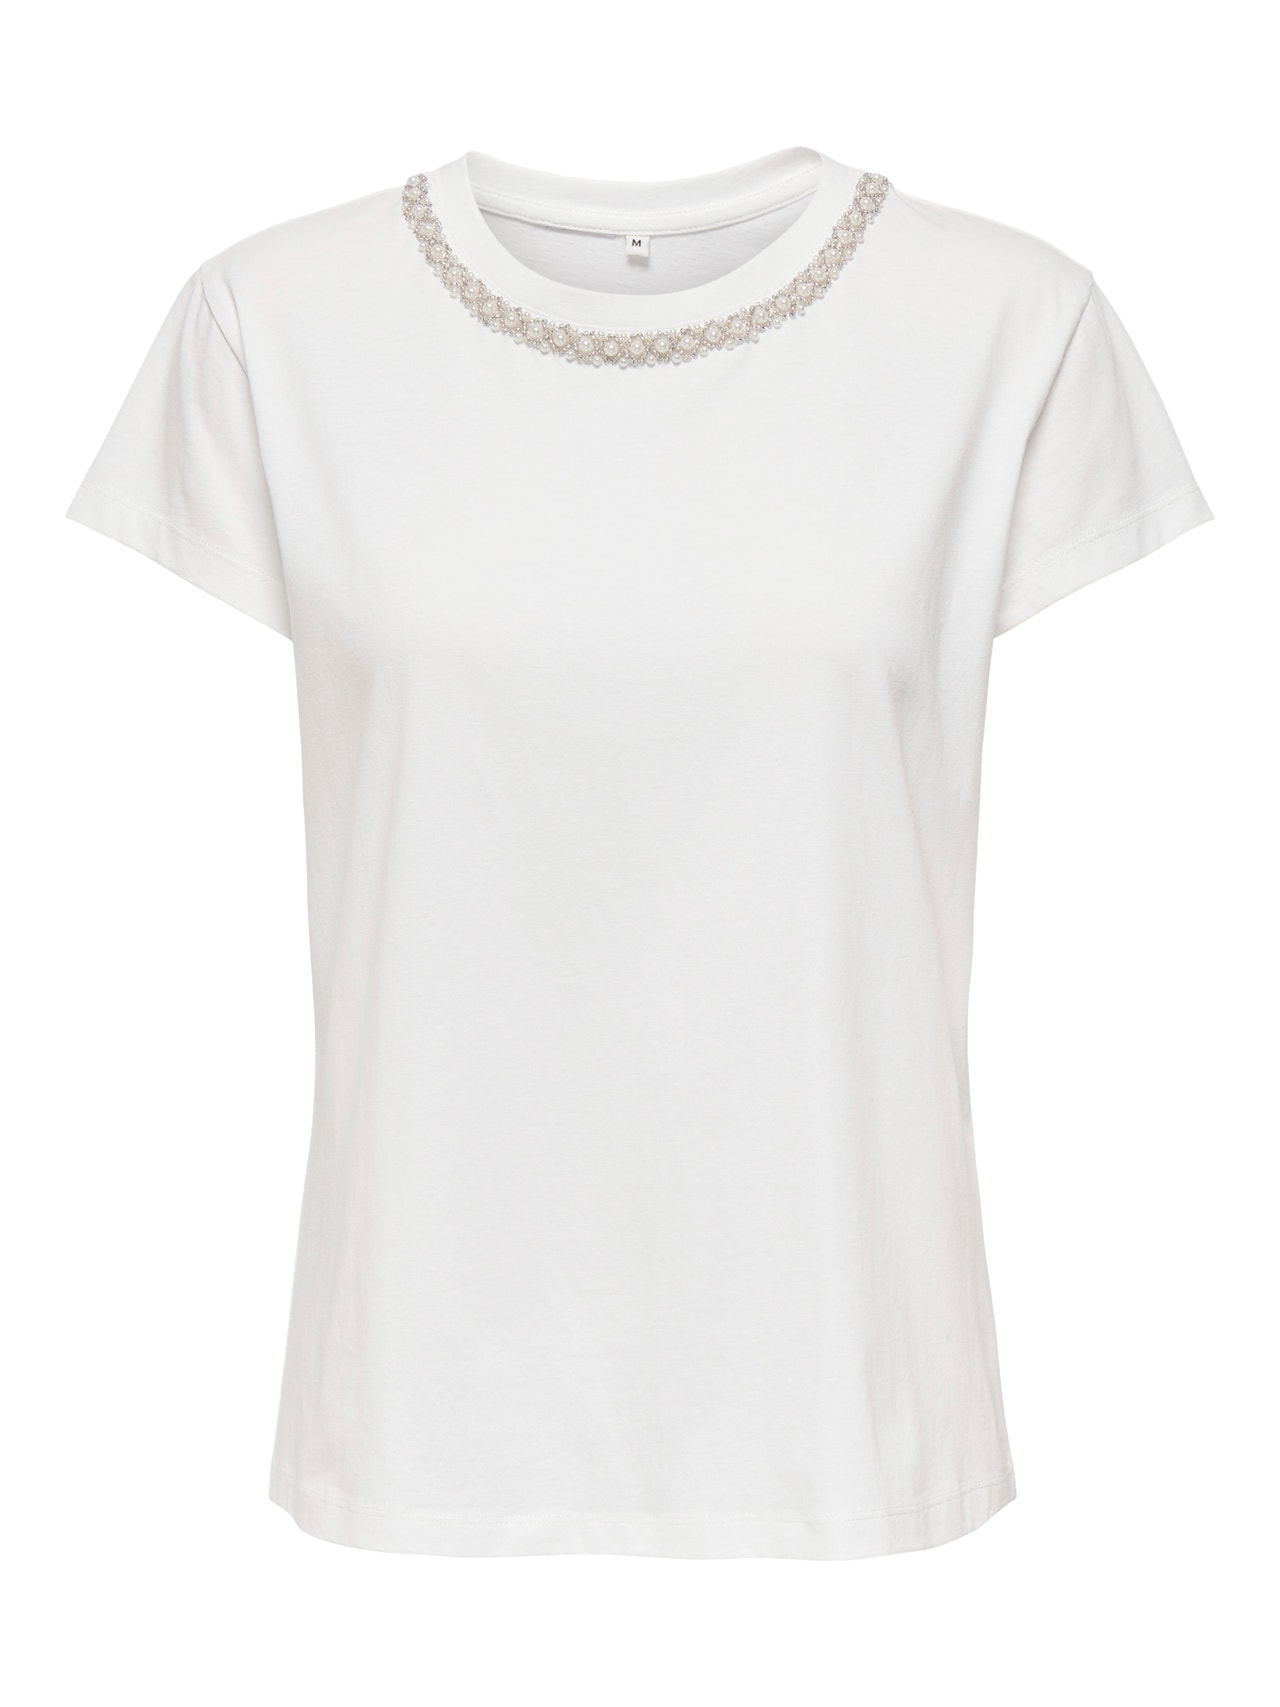 ONLY O-neck embellished t-shirt -Cloud Dancer - 15337720